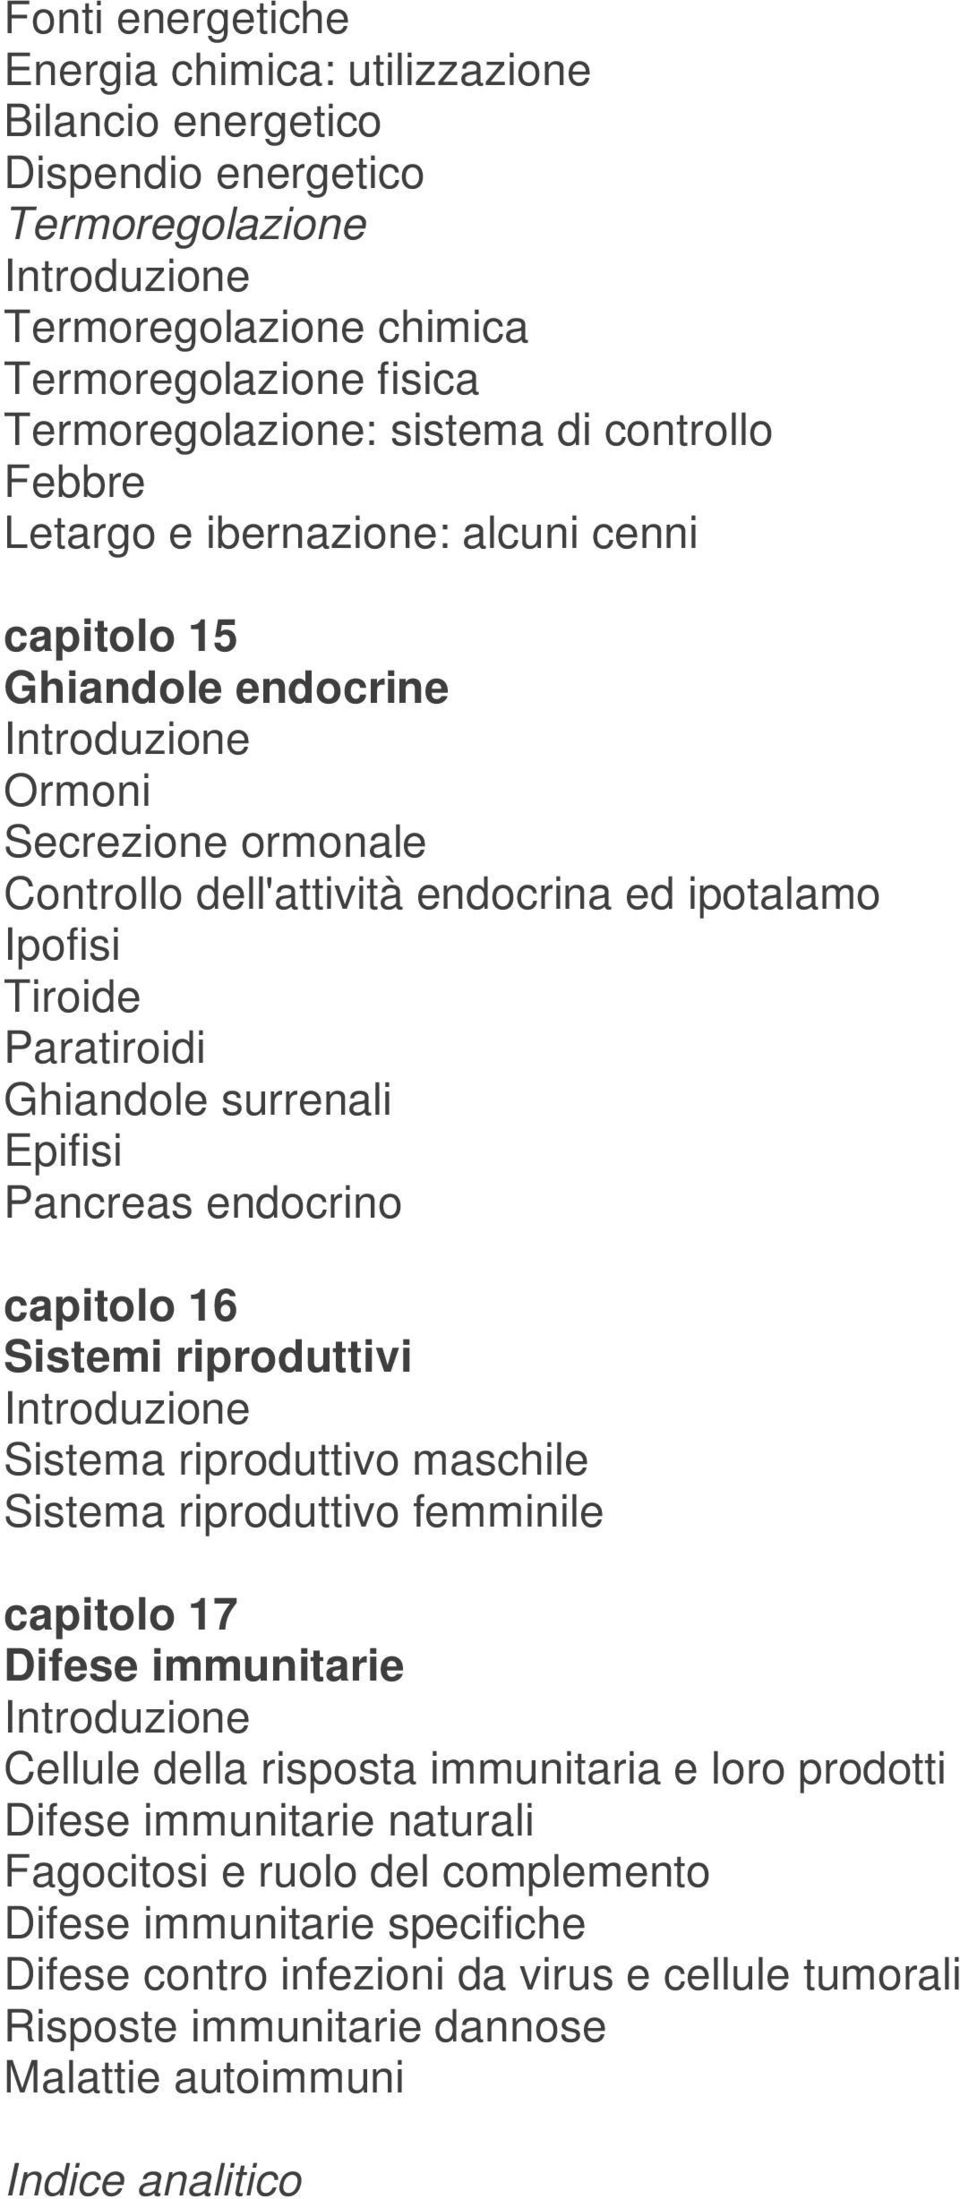 Epifisi Pancreas endocrino capitolo 16 Sistemi riproduttivi Sistema riproduttivo maschile Sistema riproduttivo femminile capitolo 17 Difese immunitarie Cellule della risposta immunitaria e loro